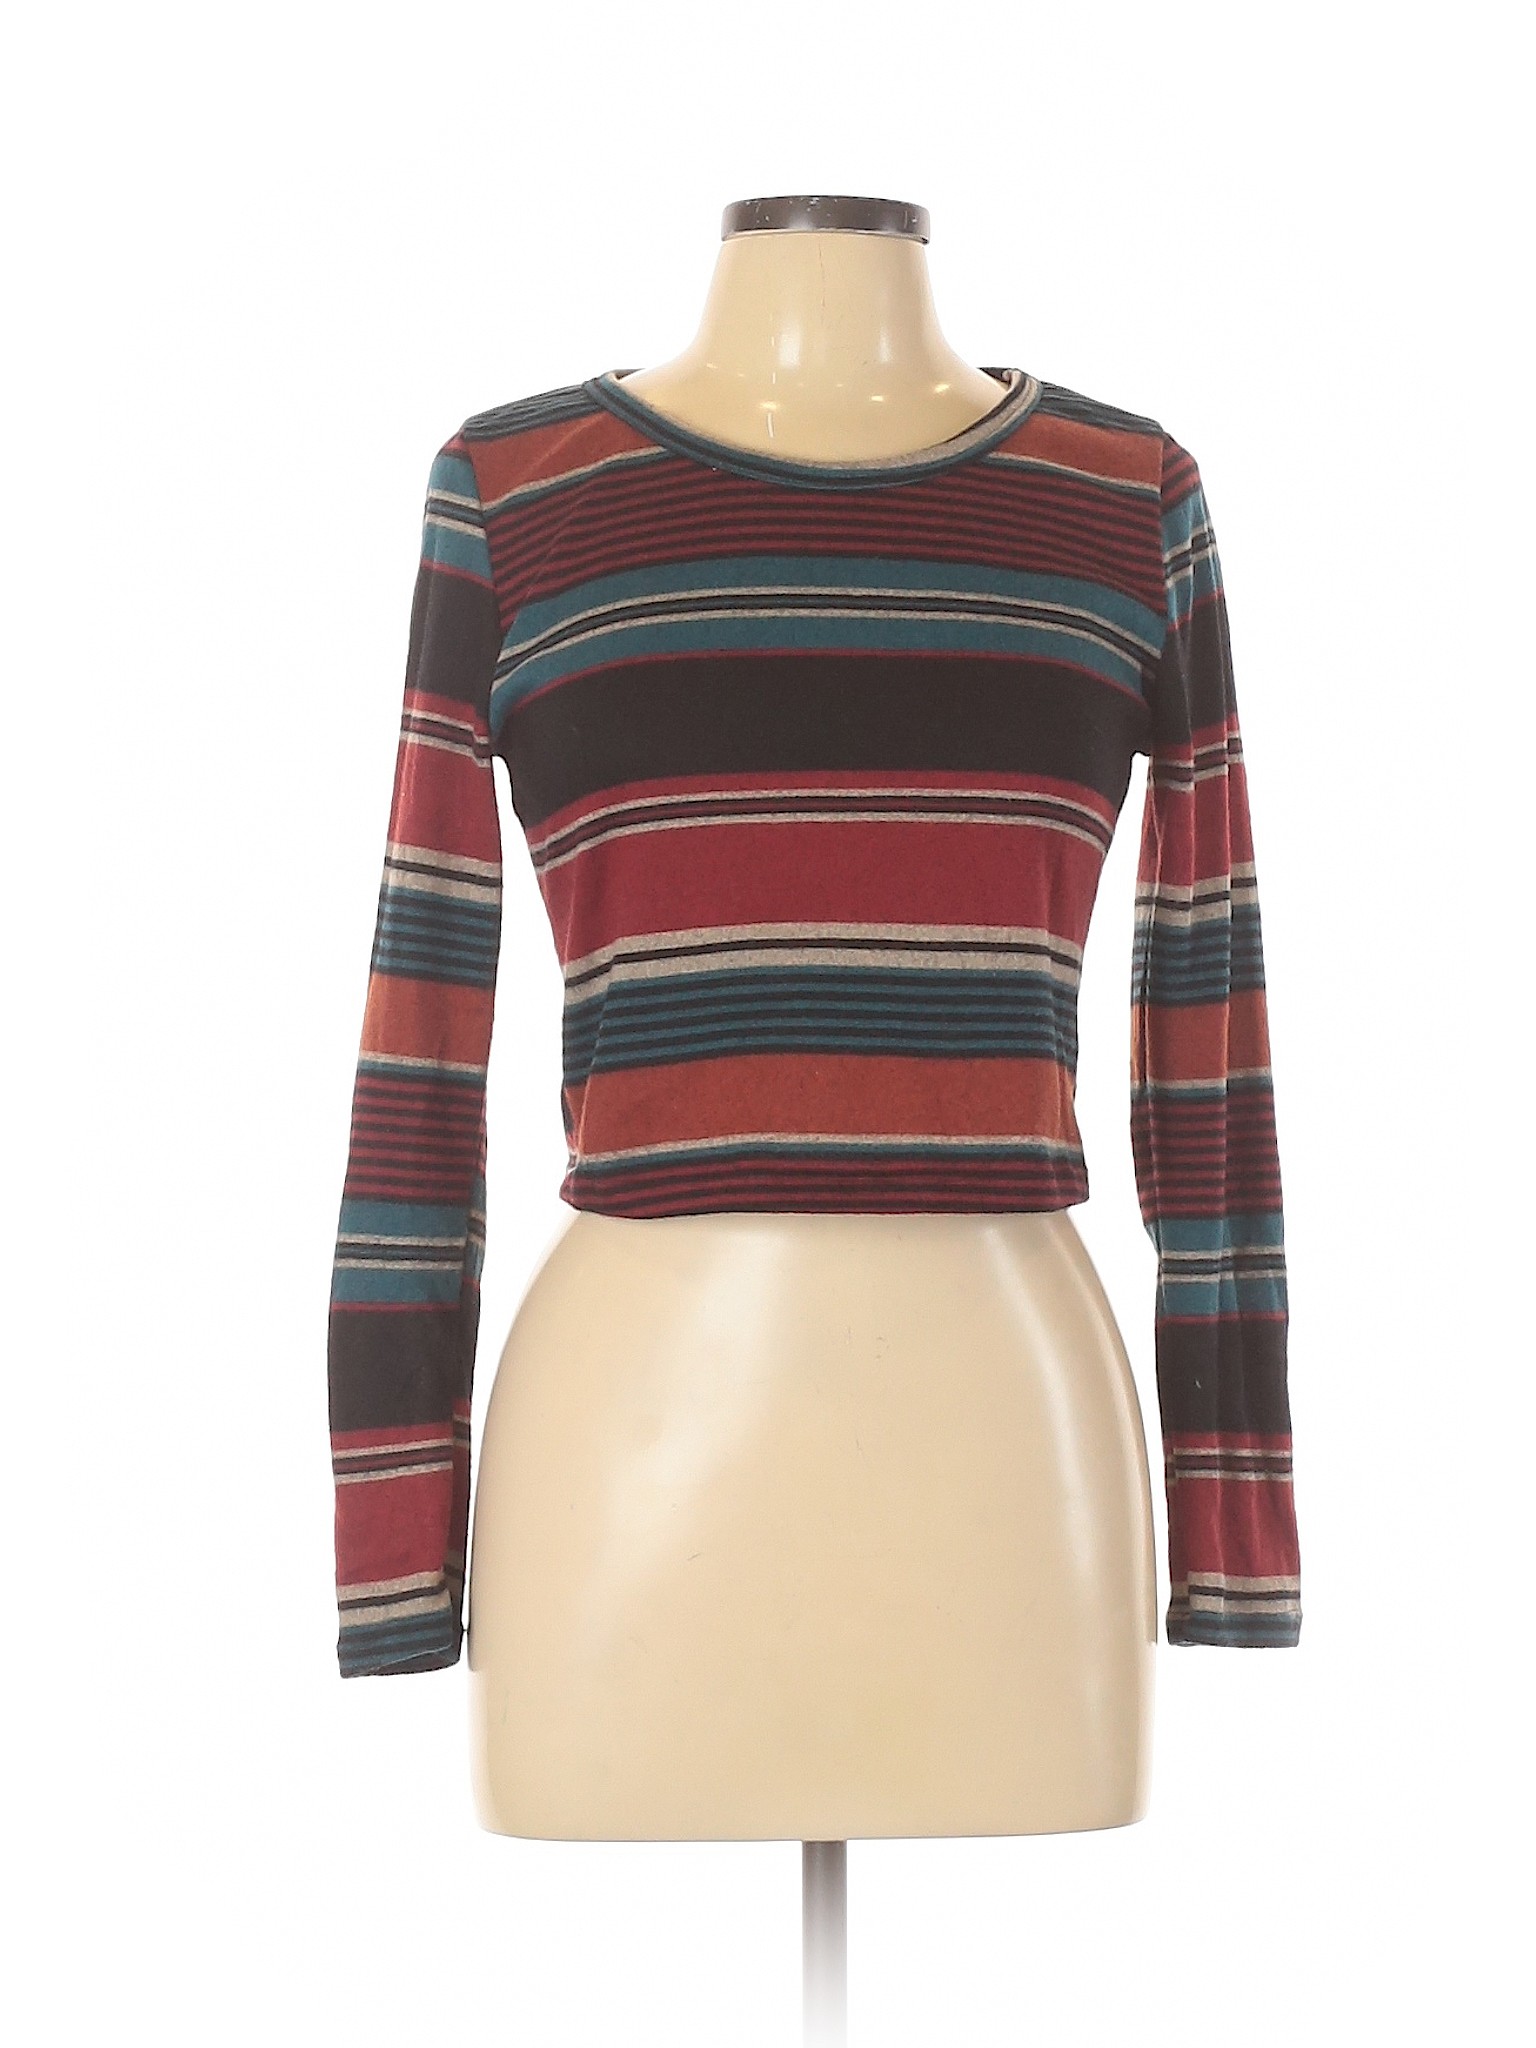 Assorted Brands Women Red Long Sleeve Top XL | eBay